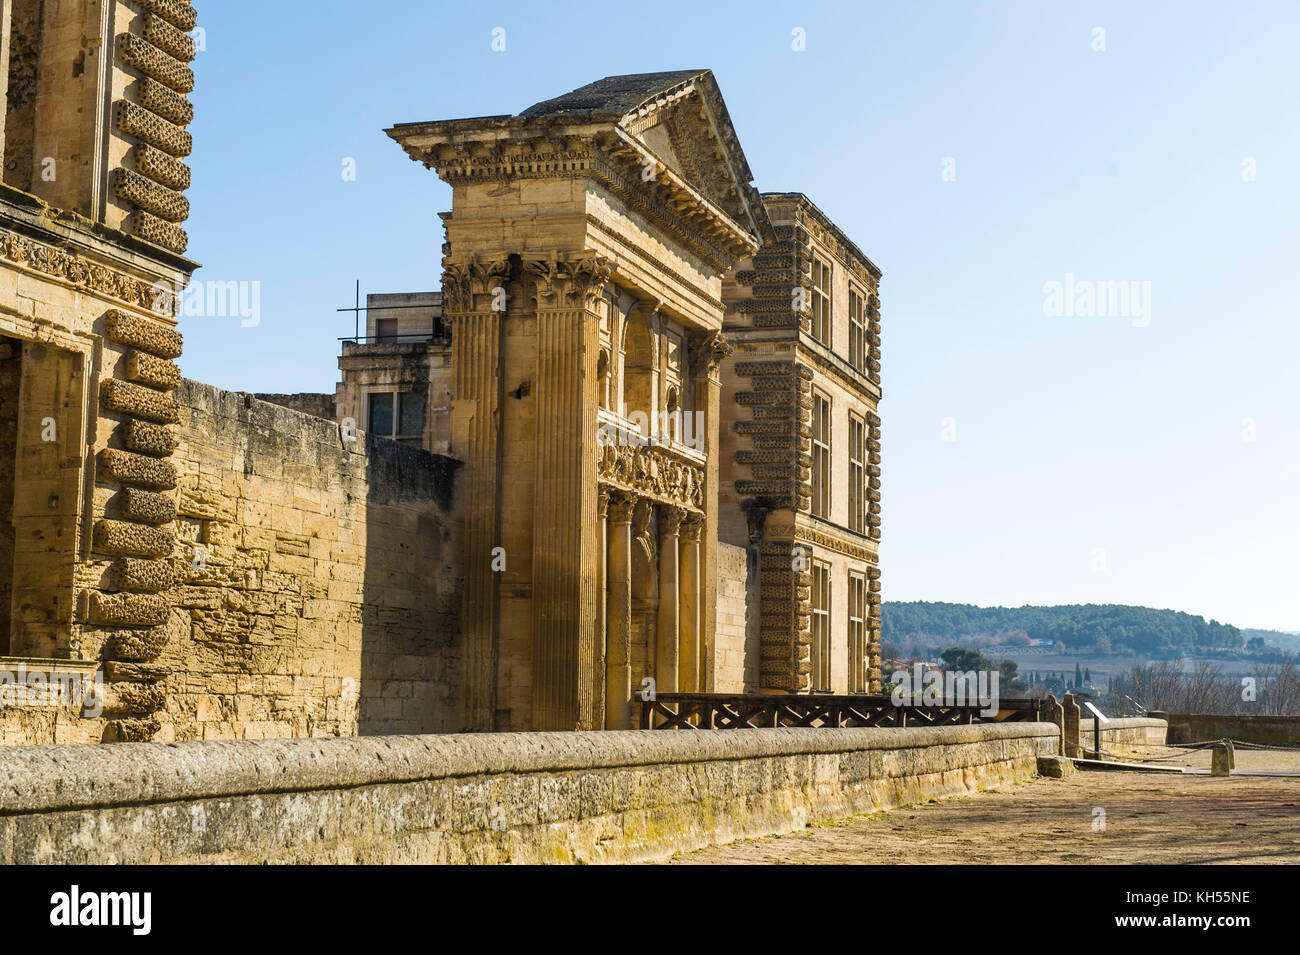 Europe, France, Vaucluse, Lubéron, La Tour-d'Aigues. The facade of the castle. Stock Photo